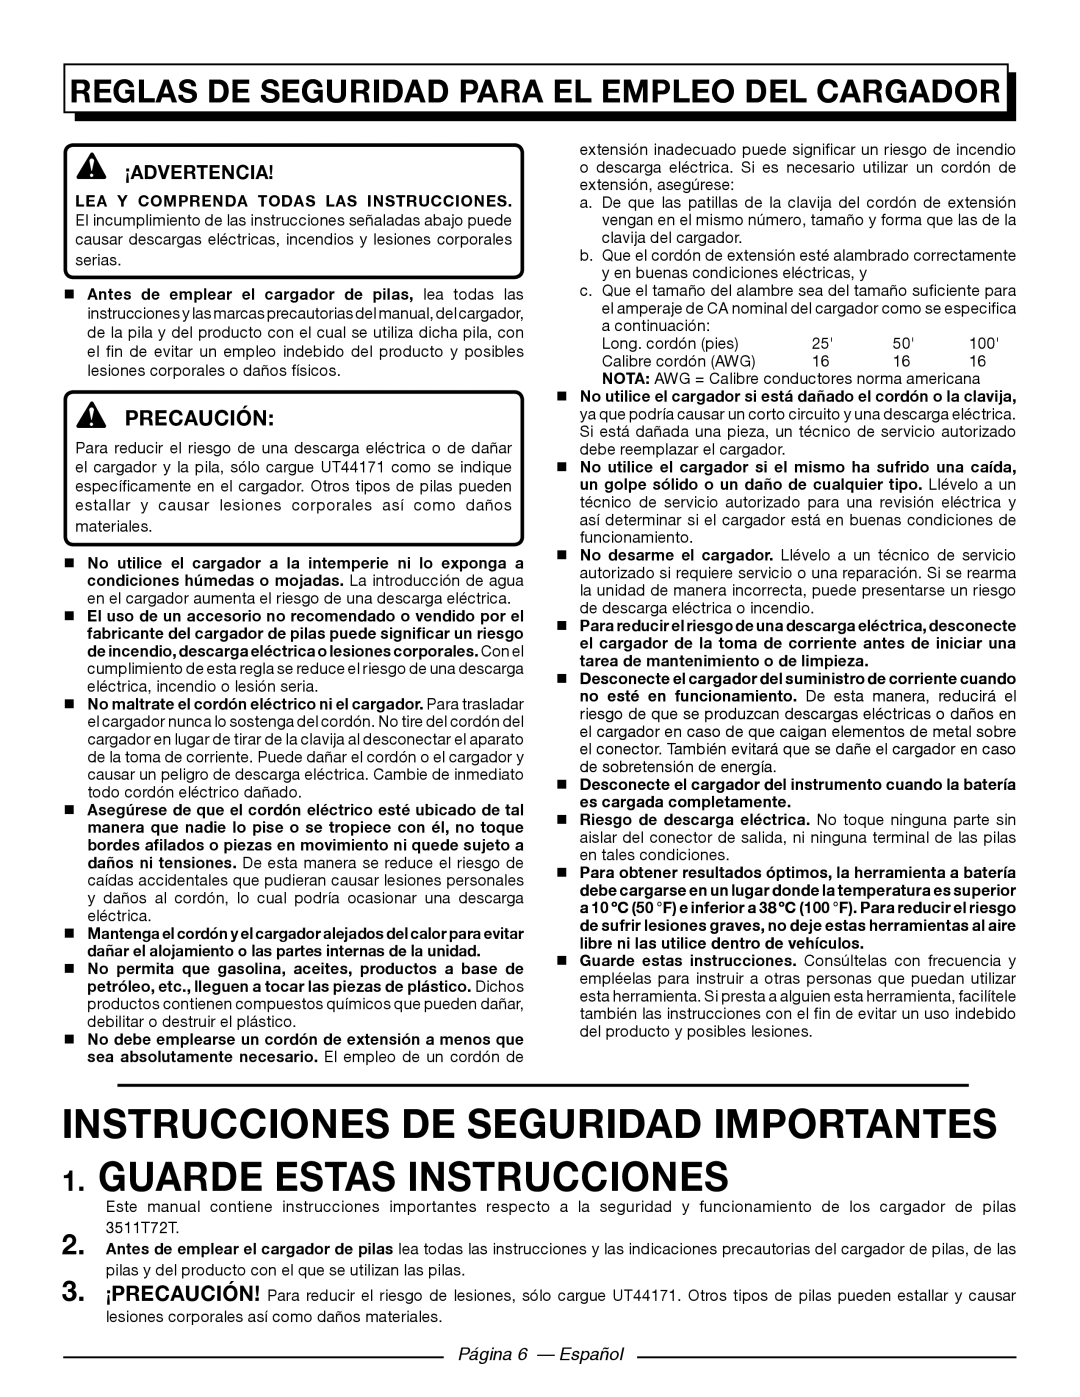 Homelite UT44171 Reglas De Seguridad Para El Empleo Del Cargador, Precaución, ¡Advertencia, Página 6 - Español 